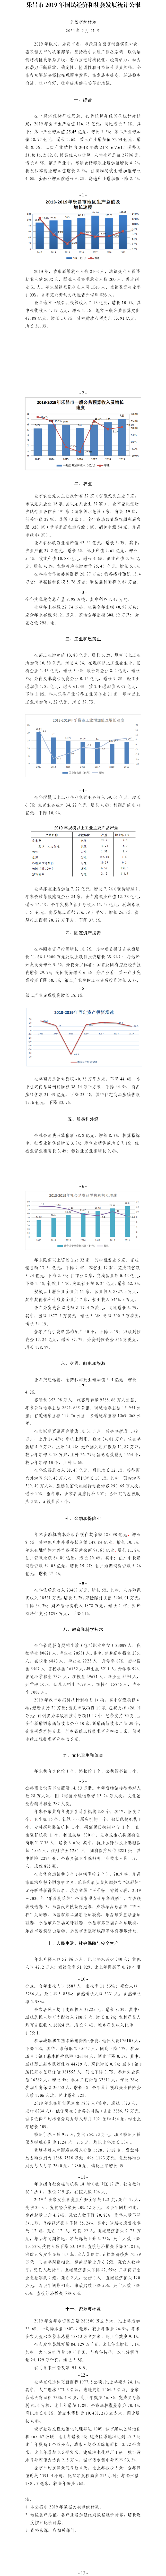 乐昌市2019年国民经济和社会发展统计公报.png